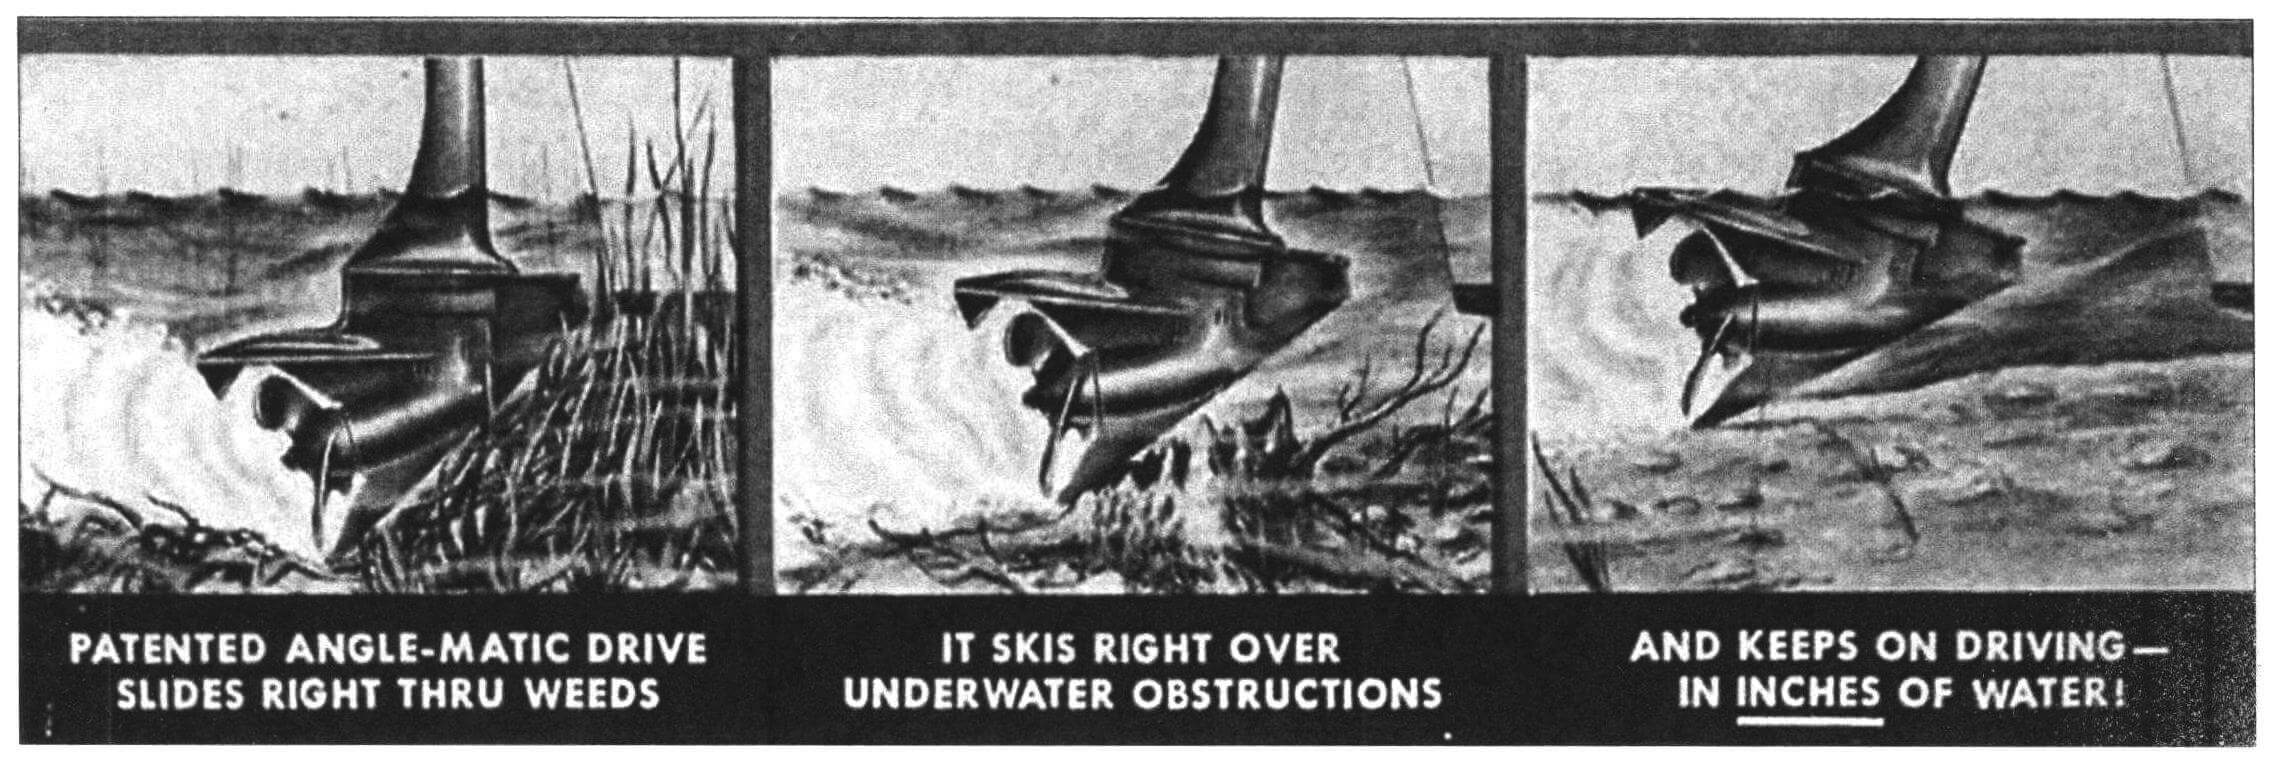 Основное внимание в рекламе мотора Johnson «Sea-Horse 3» от фирмы ОНС (1952 год) обращено именно на его «болотоходные» возможности. Три рисунка демонстрируют работу косого редуктора в траве и на мелководье